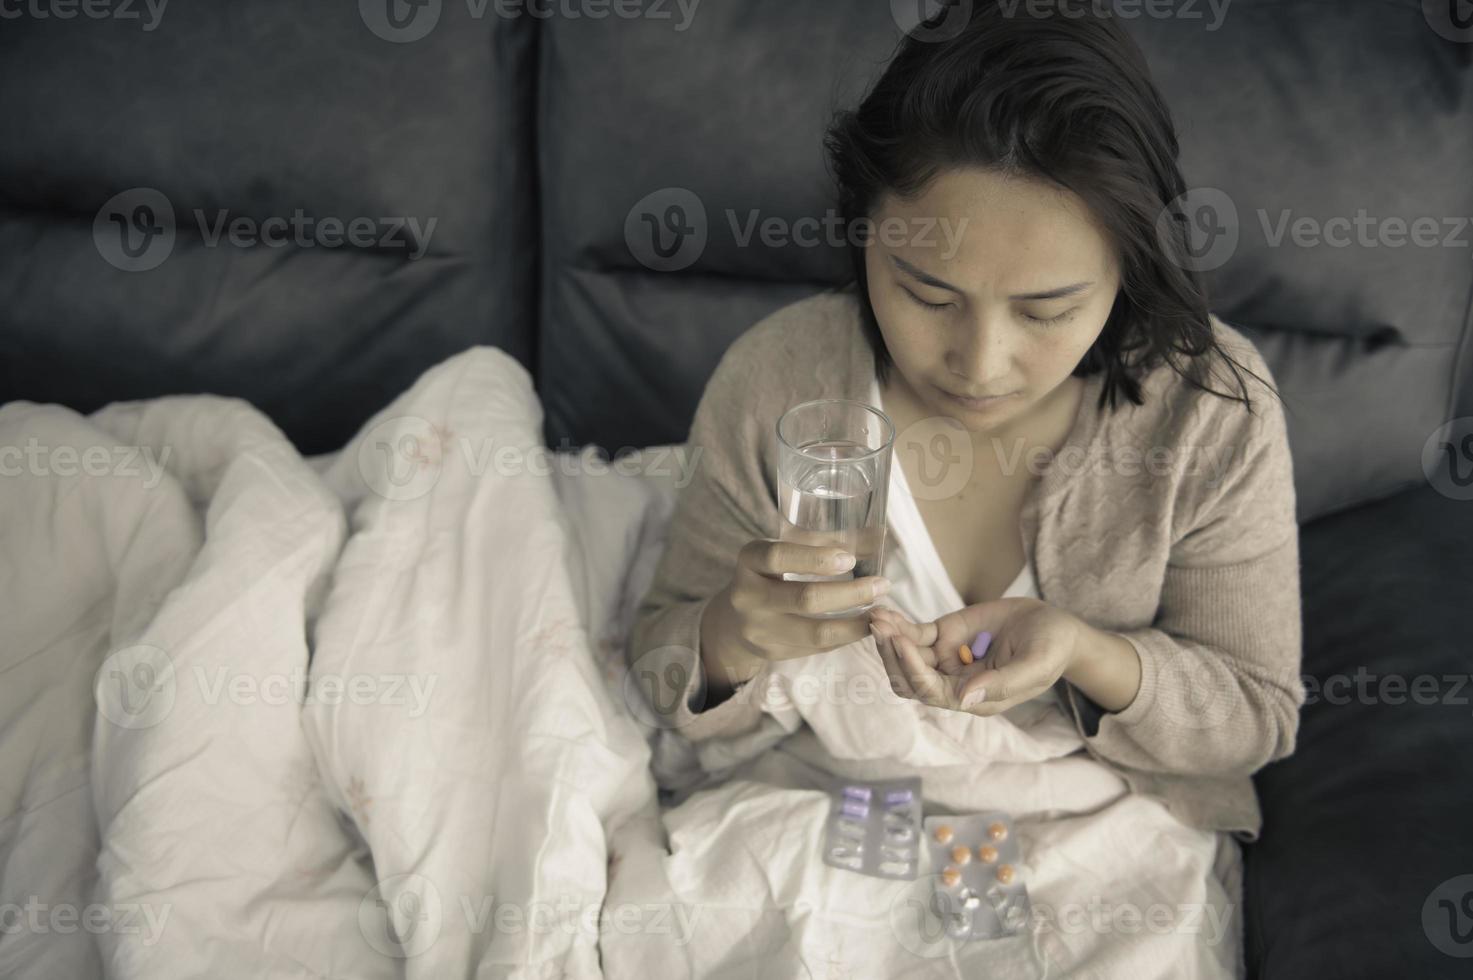 mujer asiática enferma sentada en el sofá, quédese en casa, la mujer se sintió mal, quería acostarse y descansar, fiebre alta foto